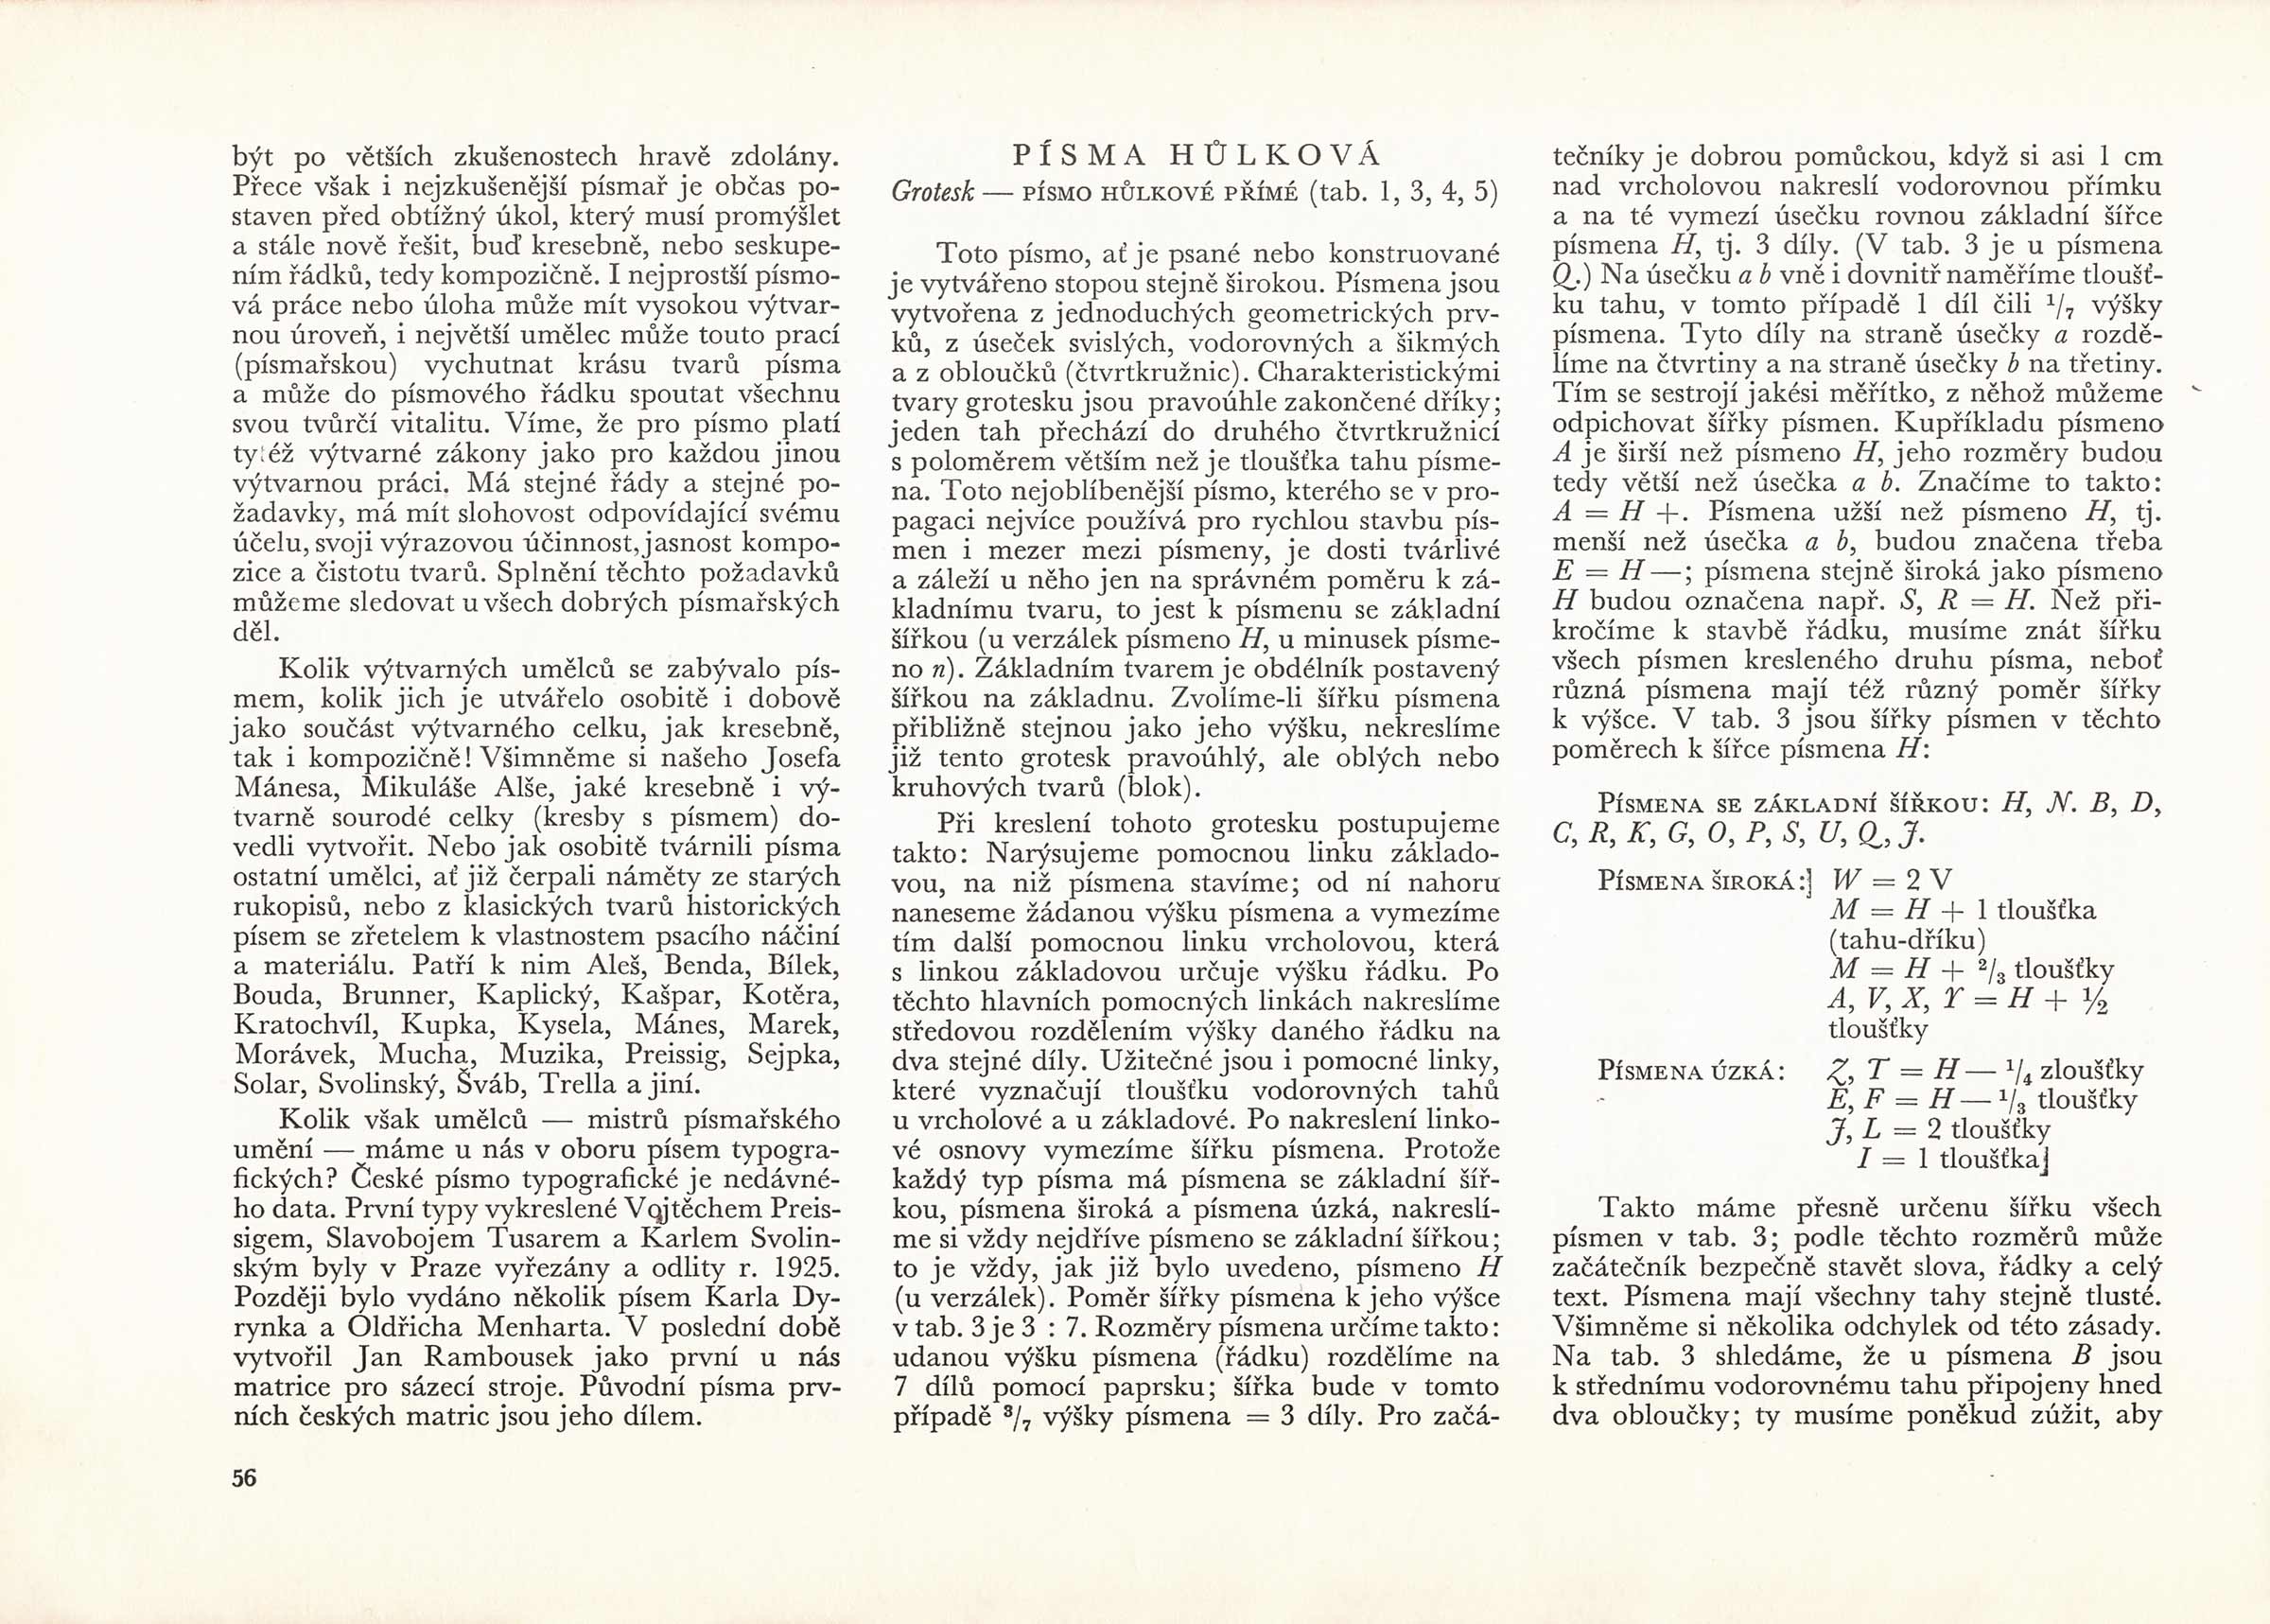 Richard Pípal vo svojej publikácii Písmo a jeho konstrukce veľmi podrobne na niekoľkých stranách popísal vlastnosti ako aj postup pri konštrukcii úzkeho kolmého grotesku.